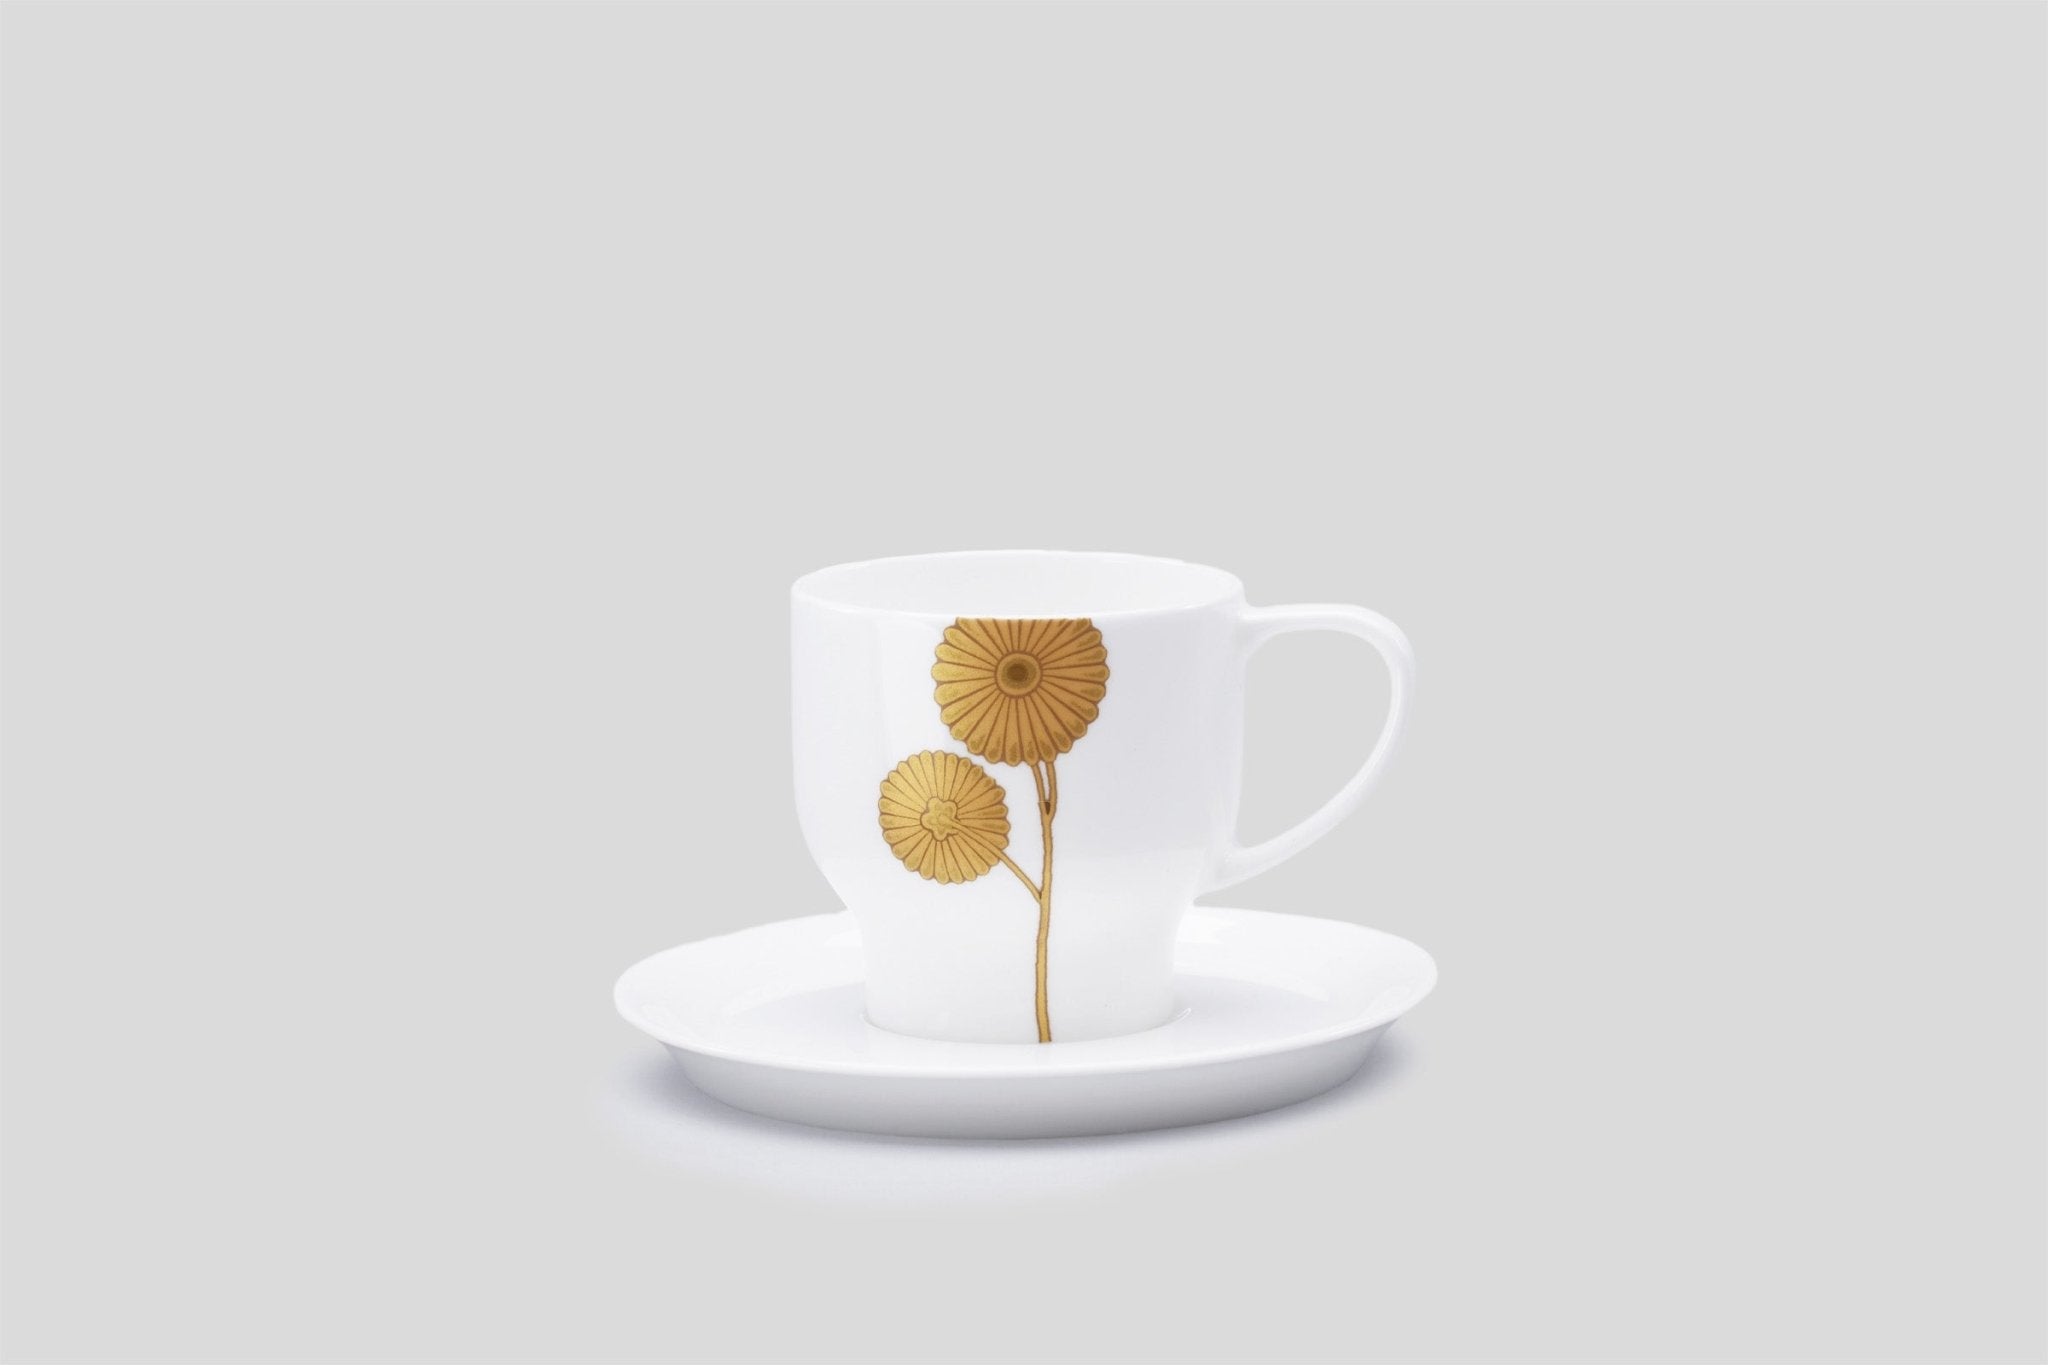 Designer-Luxury-Modern-Nikko Sallus Espresso Cup & Saucer-Nikko-Sallus-Gold-Bodo Sperlein-Bone China-Designer-Luxury-Modern-Tasse-Becher-Kaffee Tasse